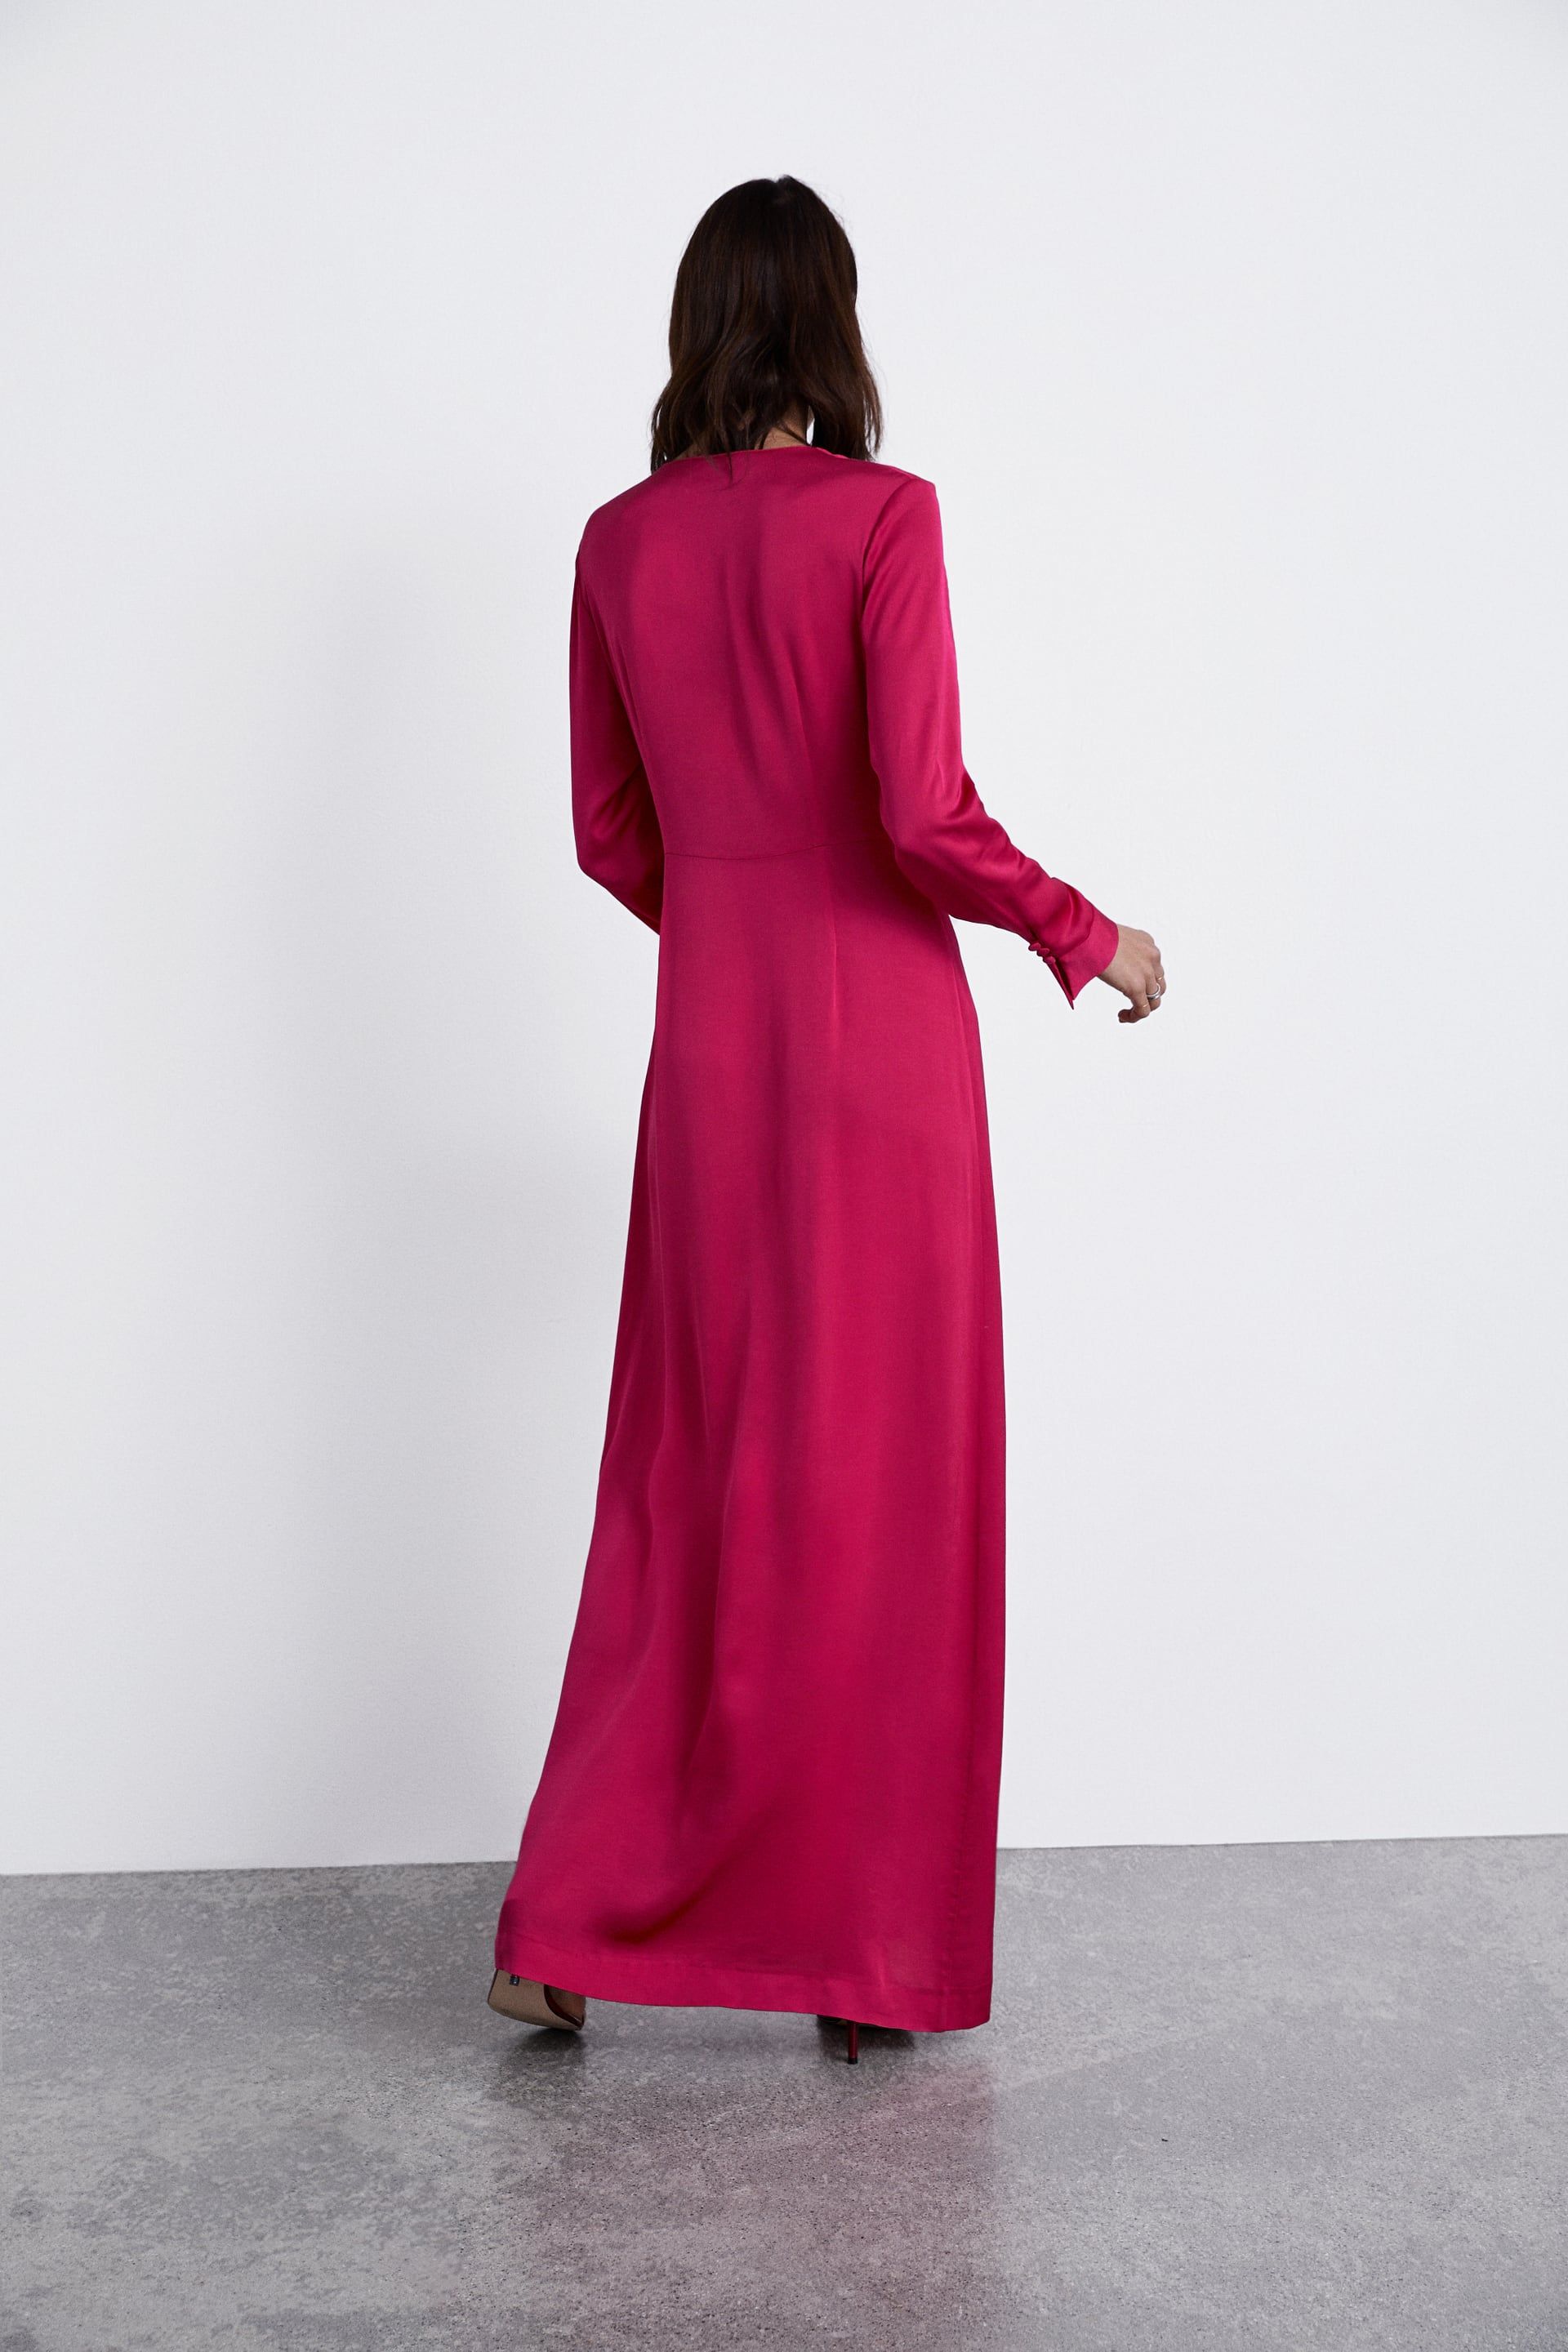 Zara acaba de sacar a la venta el vestido de fiesta más de su historia - Zara vende un vestido espectacular en todas las tallas